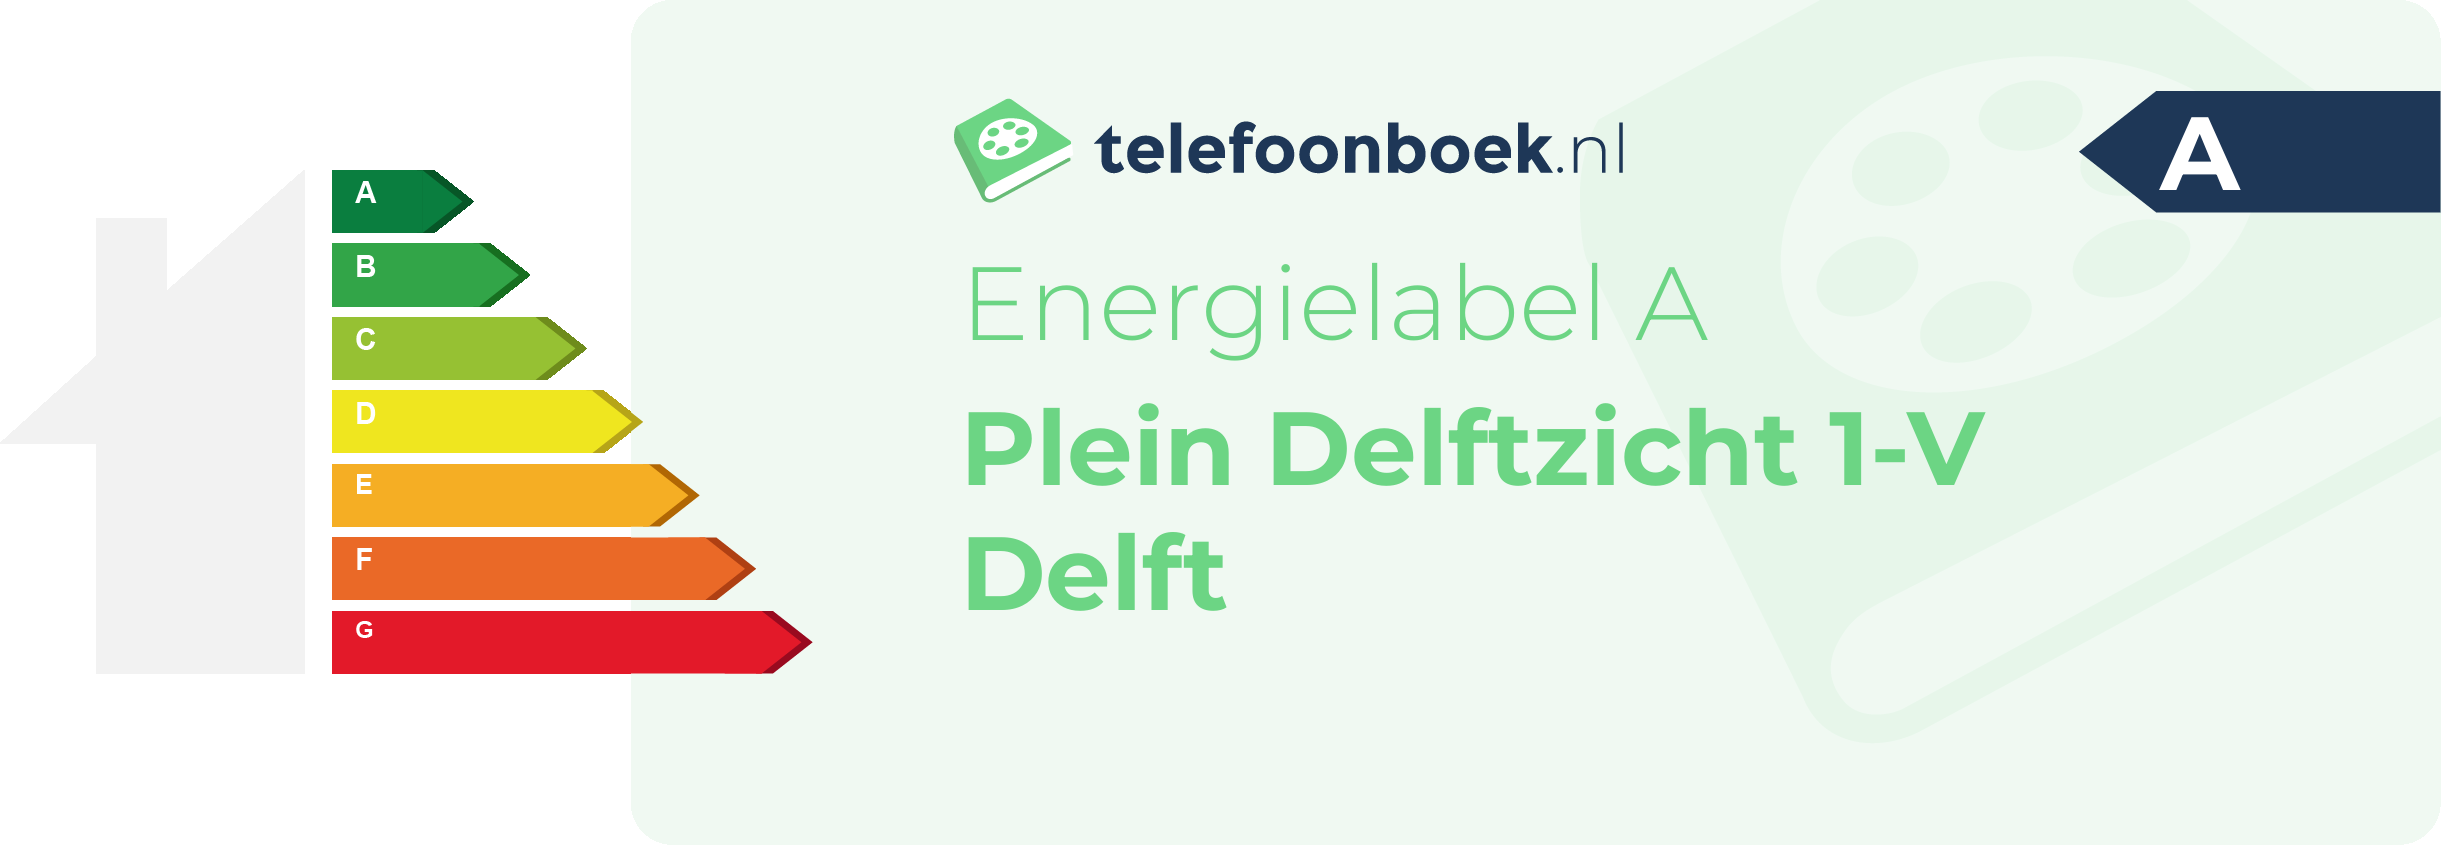 Energielabel Plein Delftzicht 1-V Delft